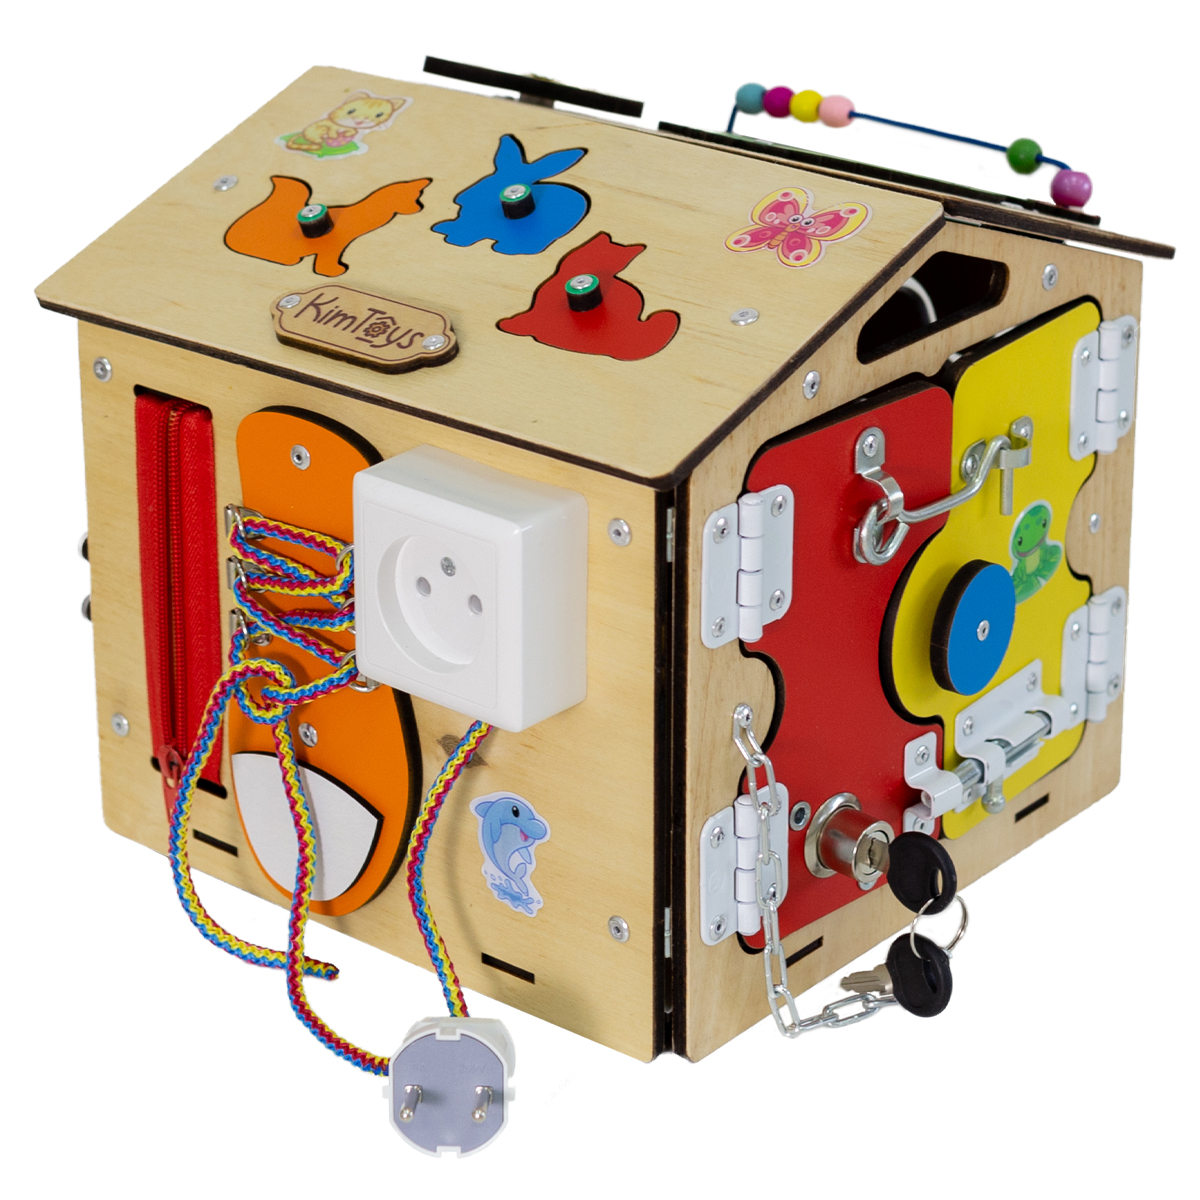 Бизиборд KimToys Домик-игрушка для девочек и мальчиков - фото 1